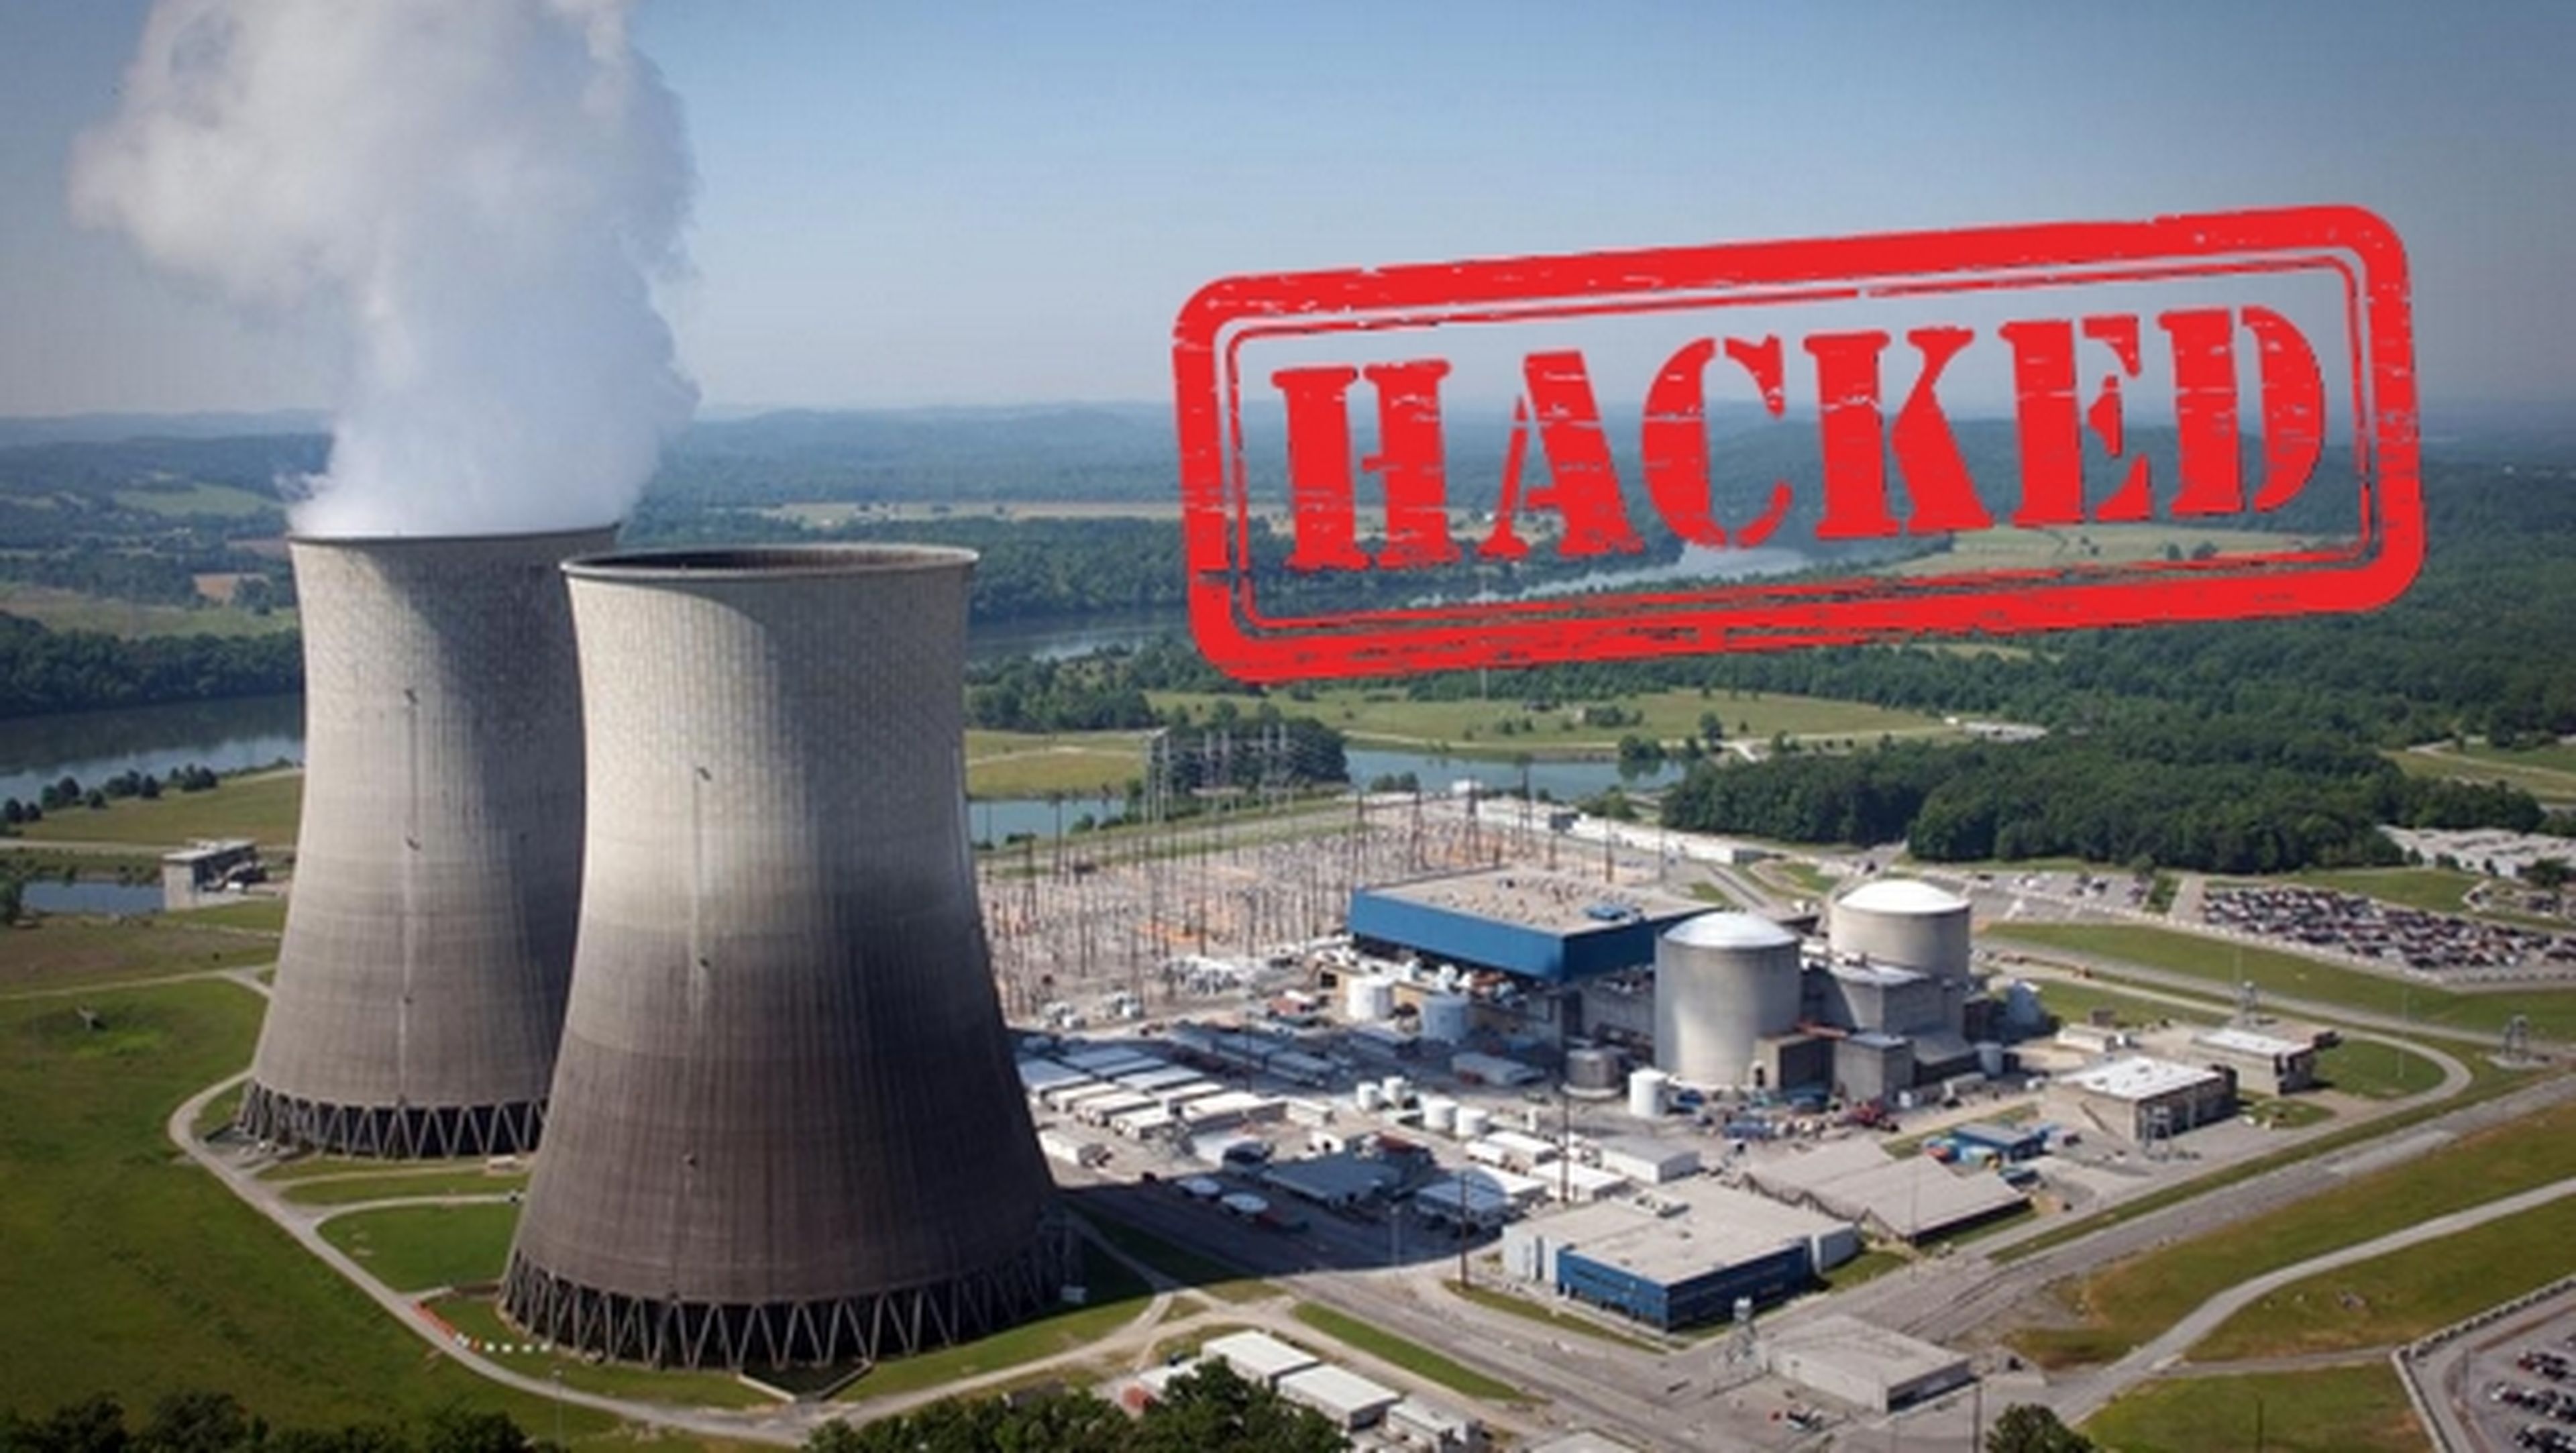 Confirman el hackeo de una central nuclear para robar uranio